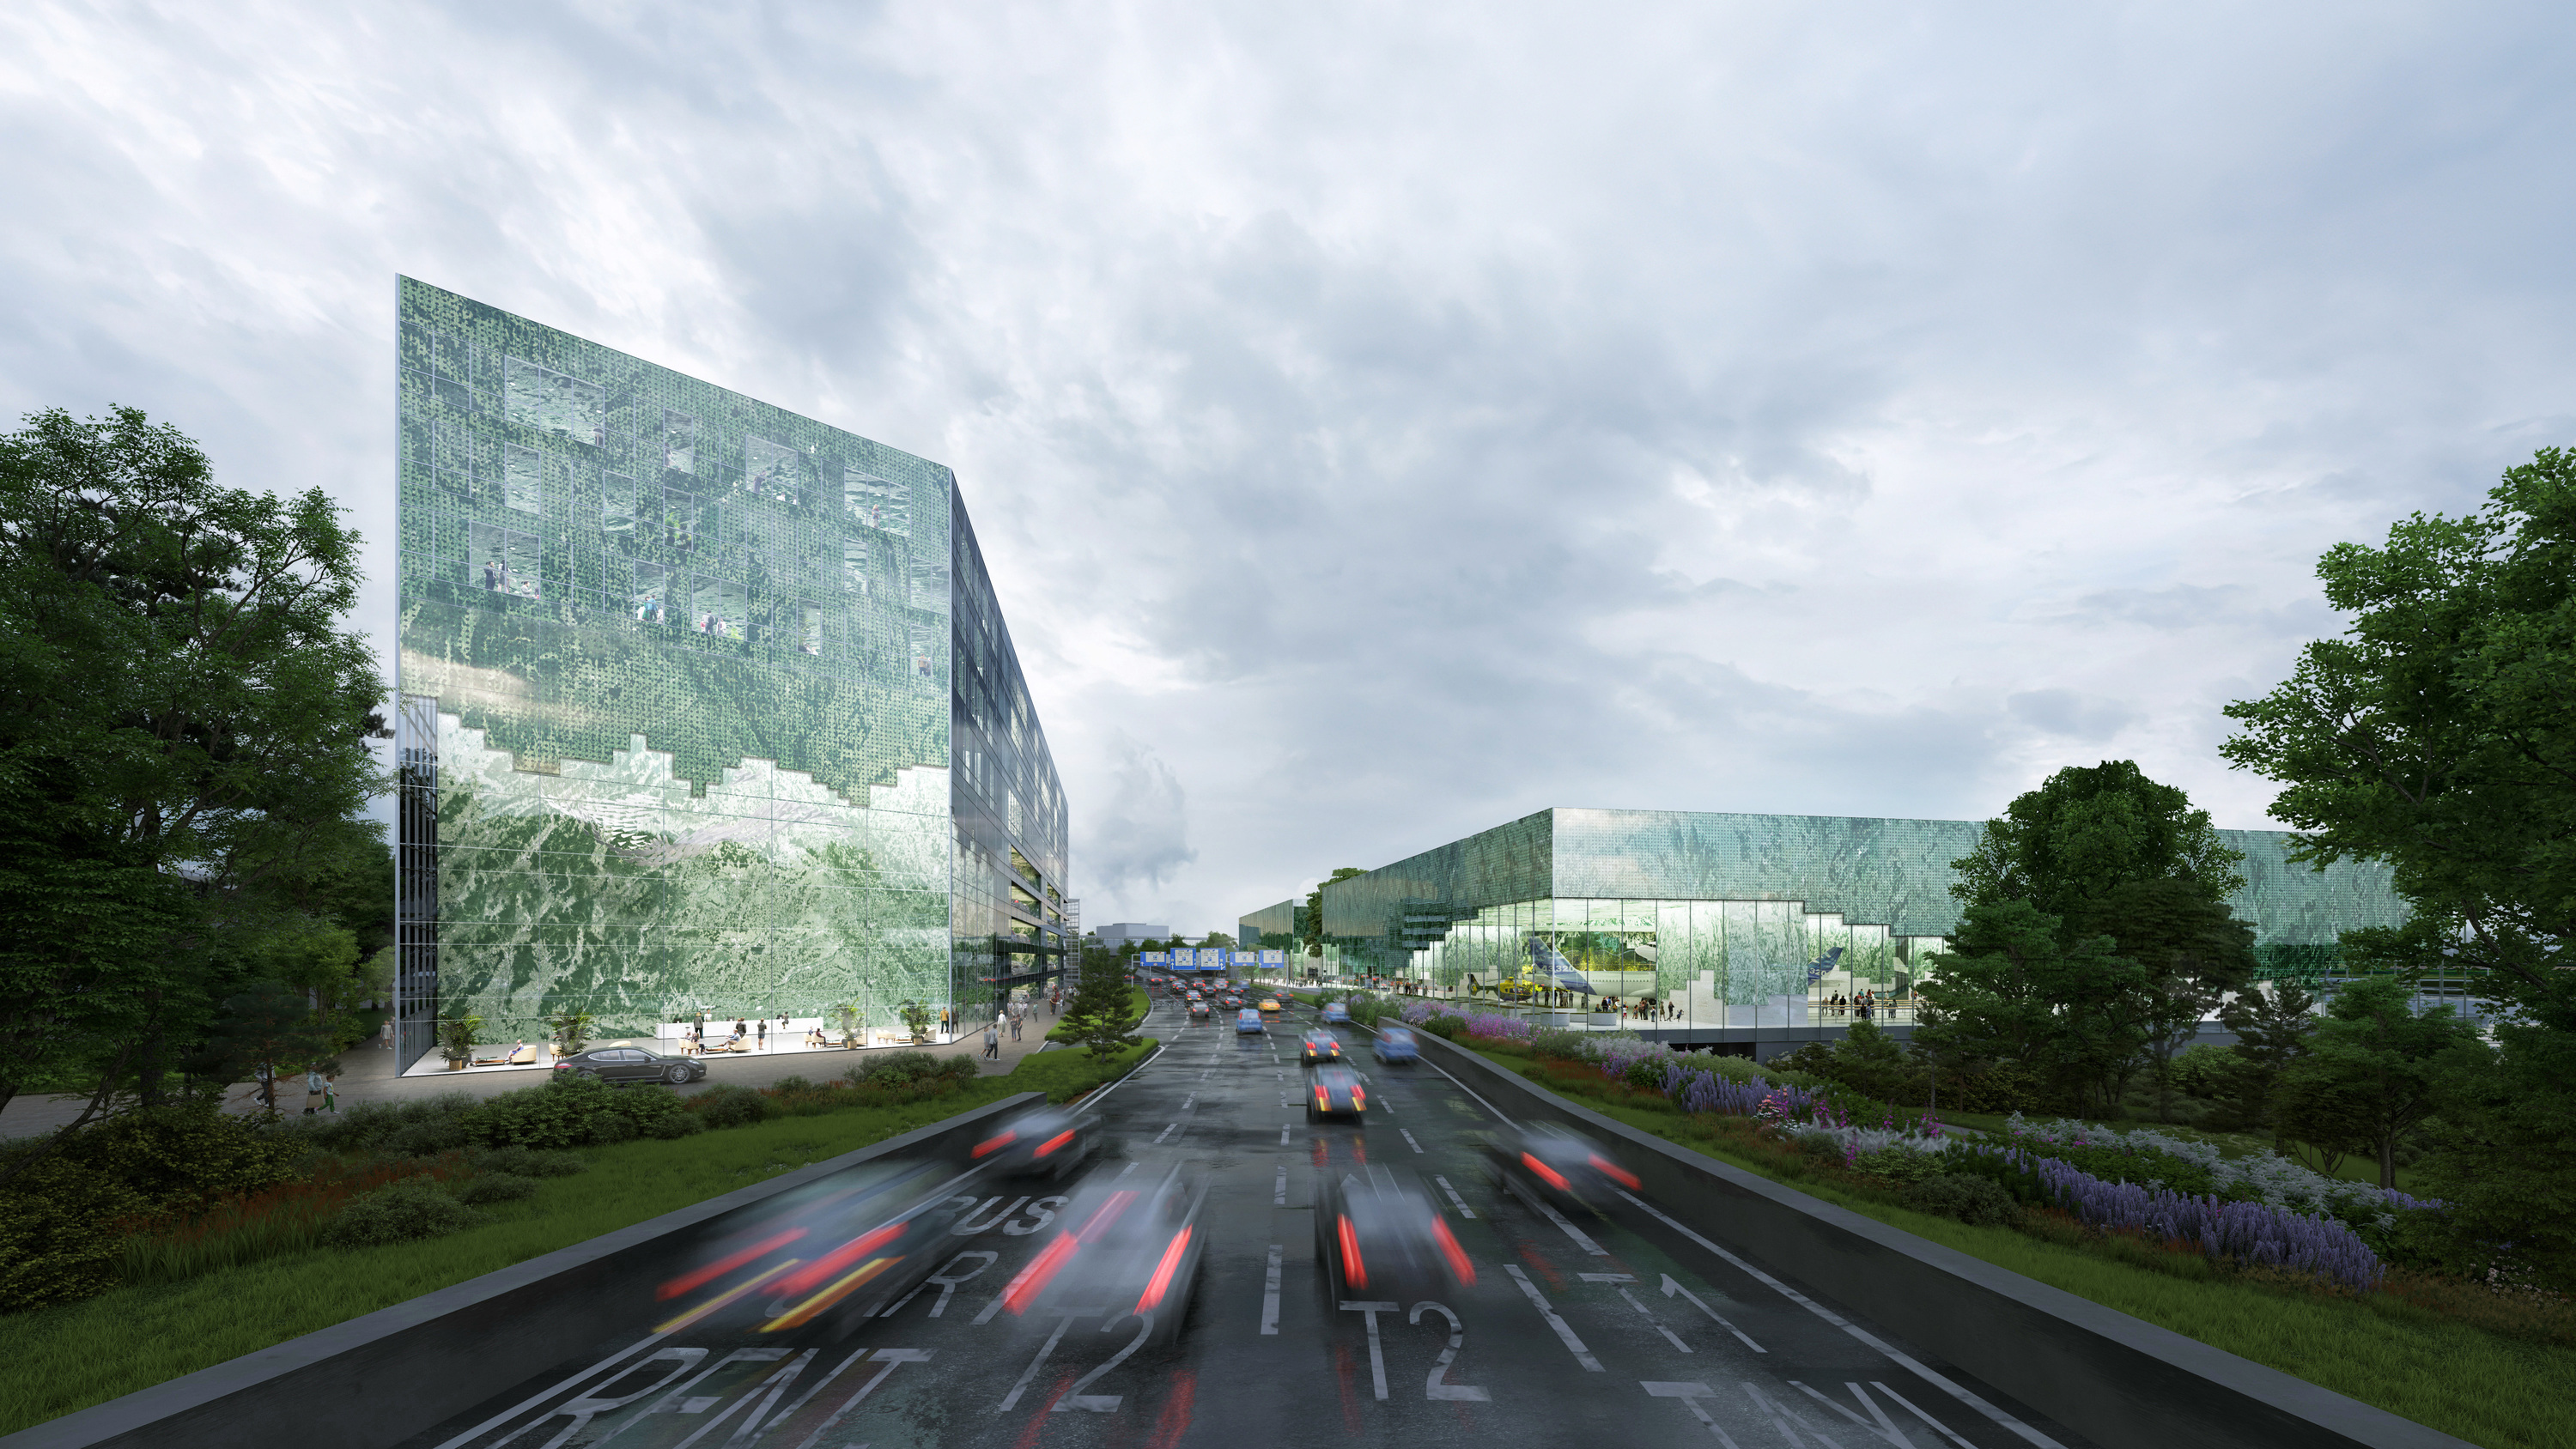 座落在机场大道两侧的新航站建筑，是进出布拉格机场最先映入眼帘的绿宝石地标。